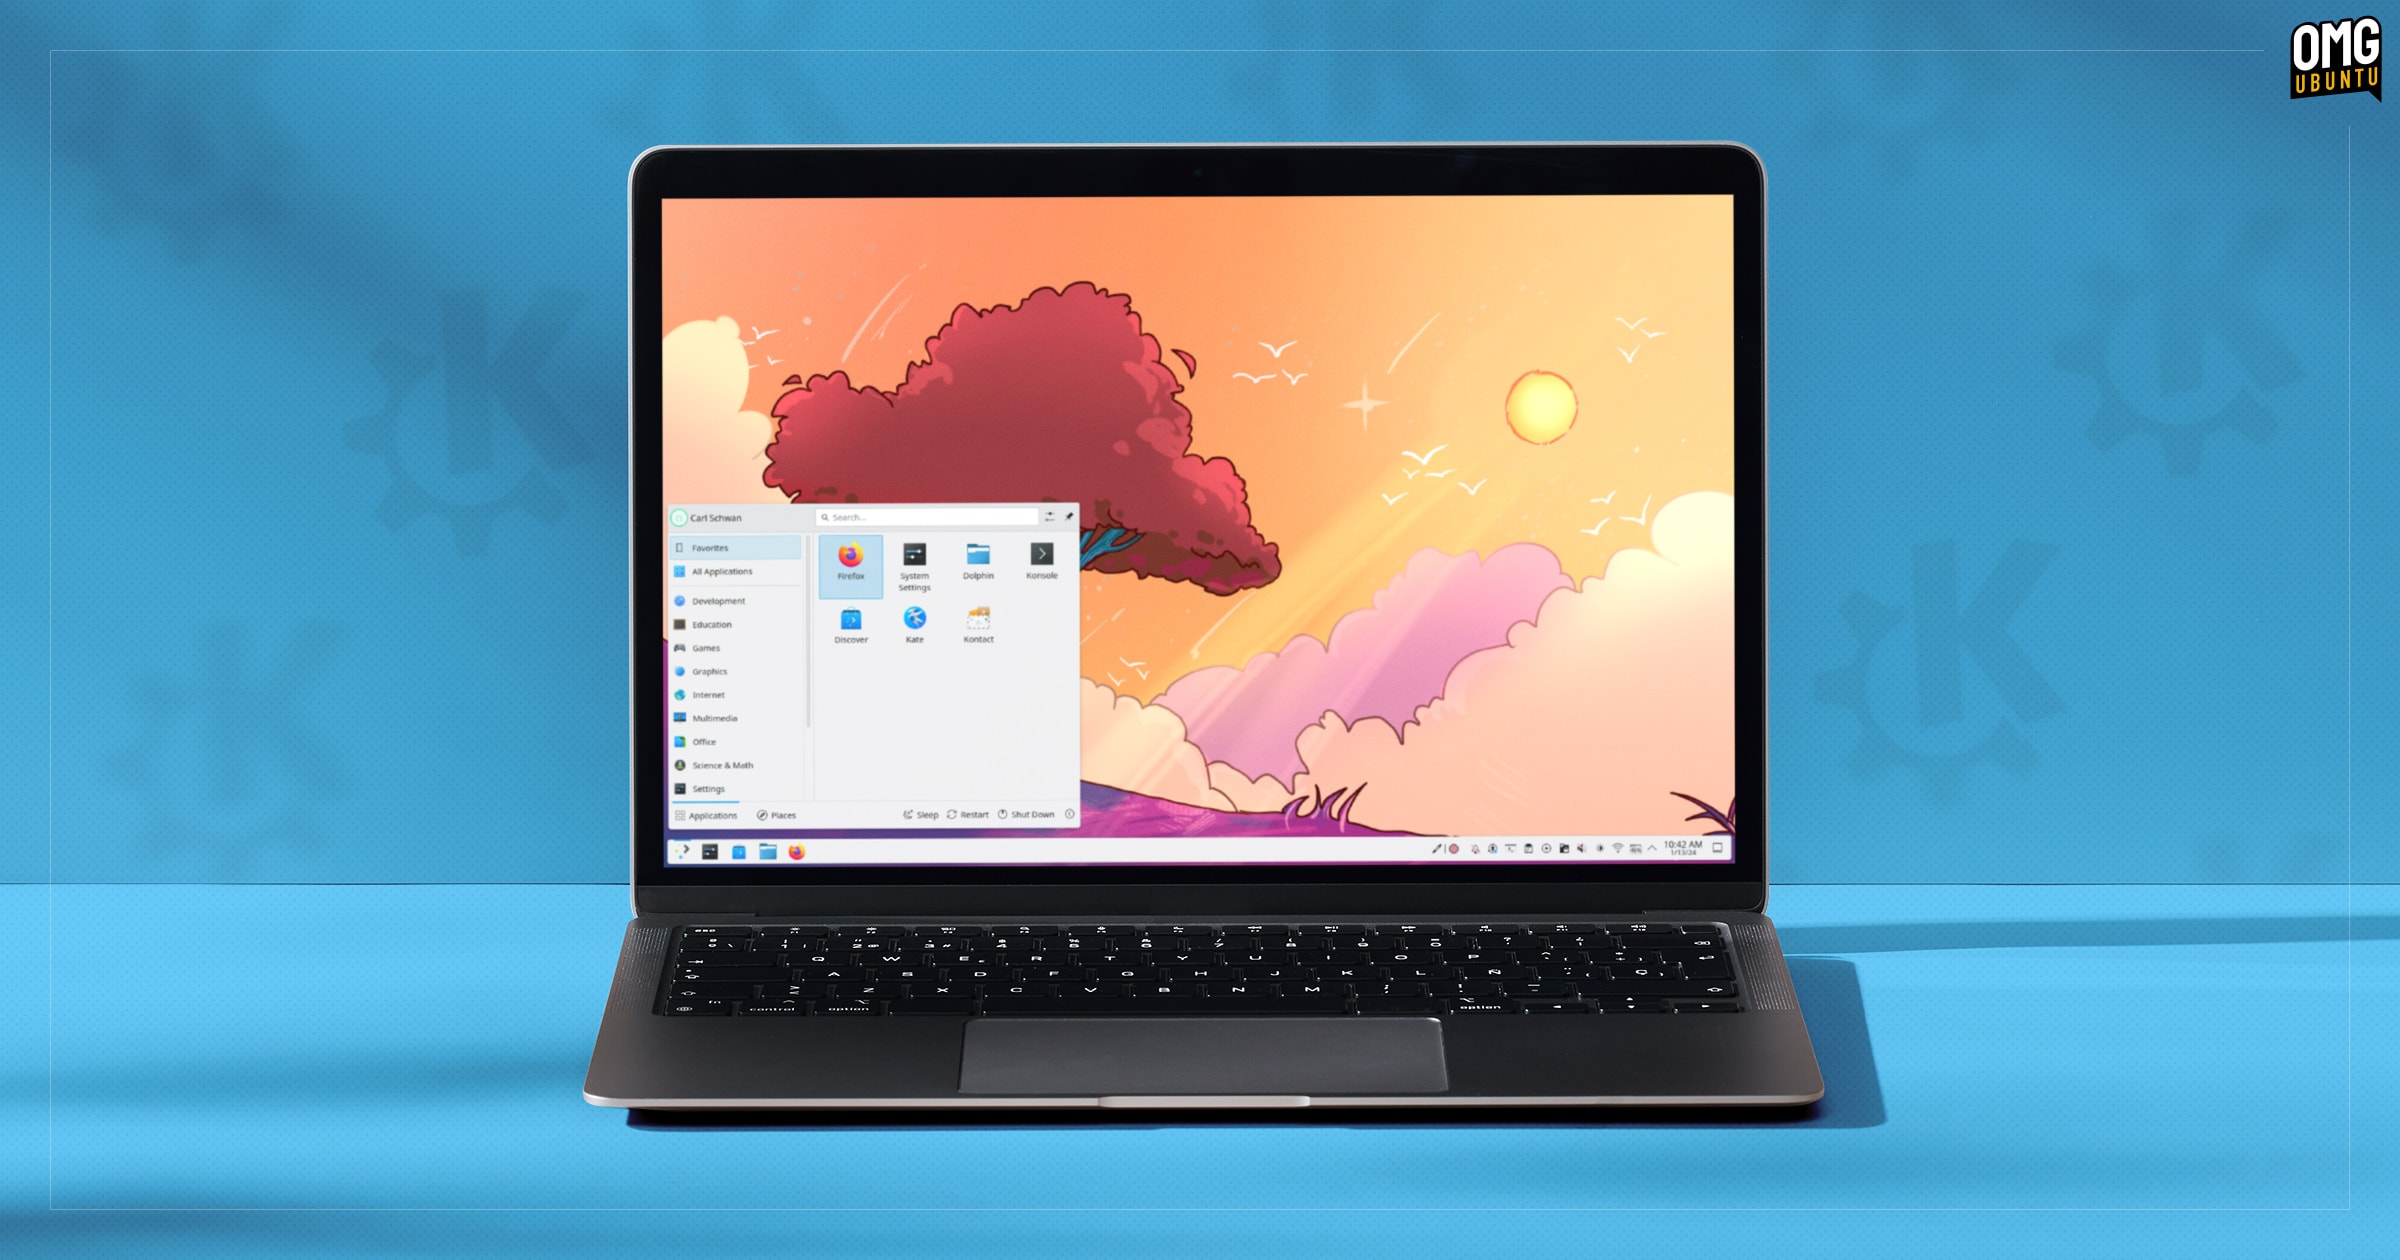 KDE Plasma 6.0 desktop on a laptop